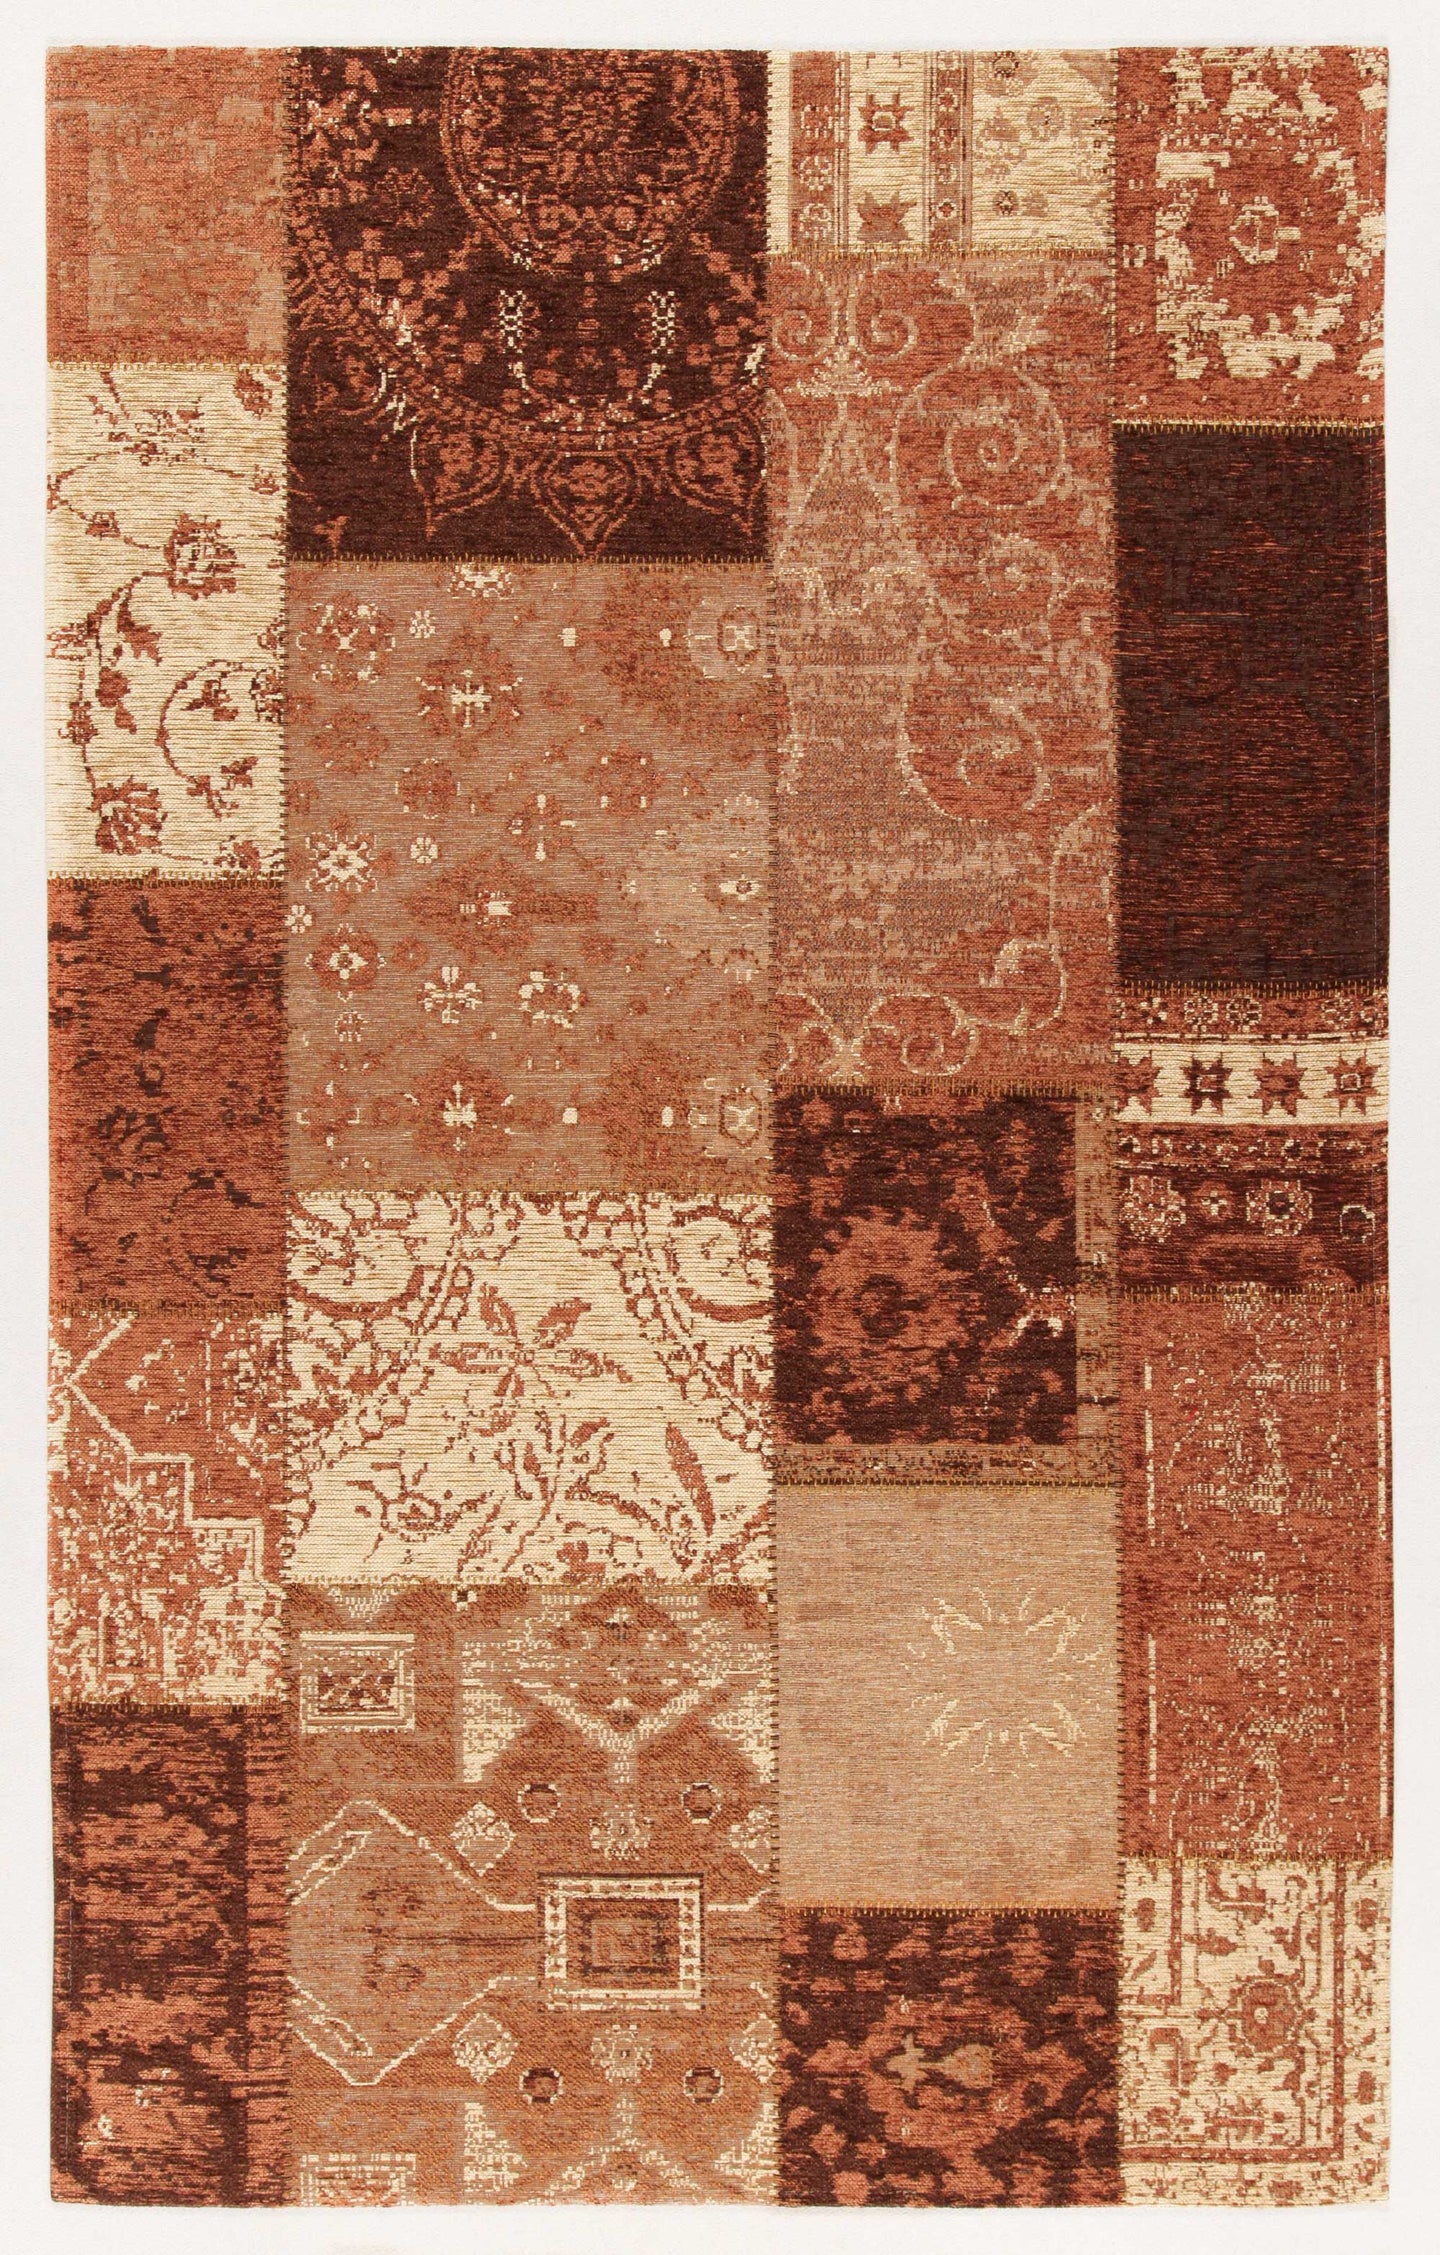 Carpet Tapis Alfombra Teppich modern 230x160 CM